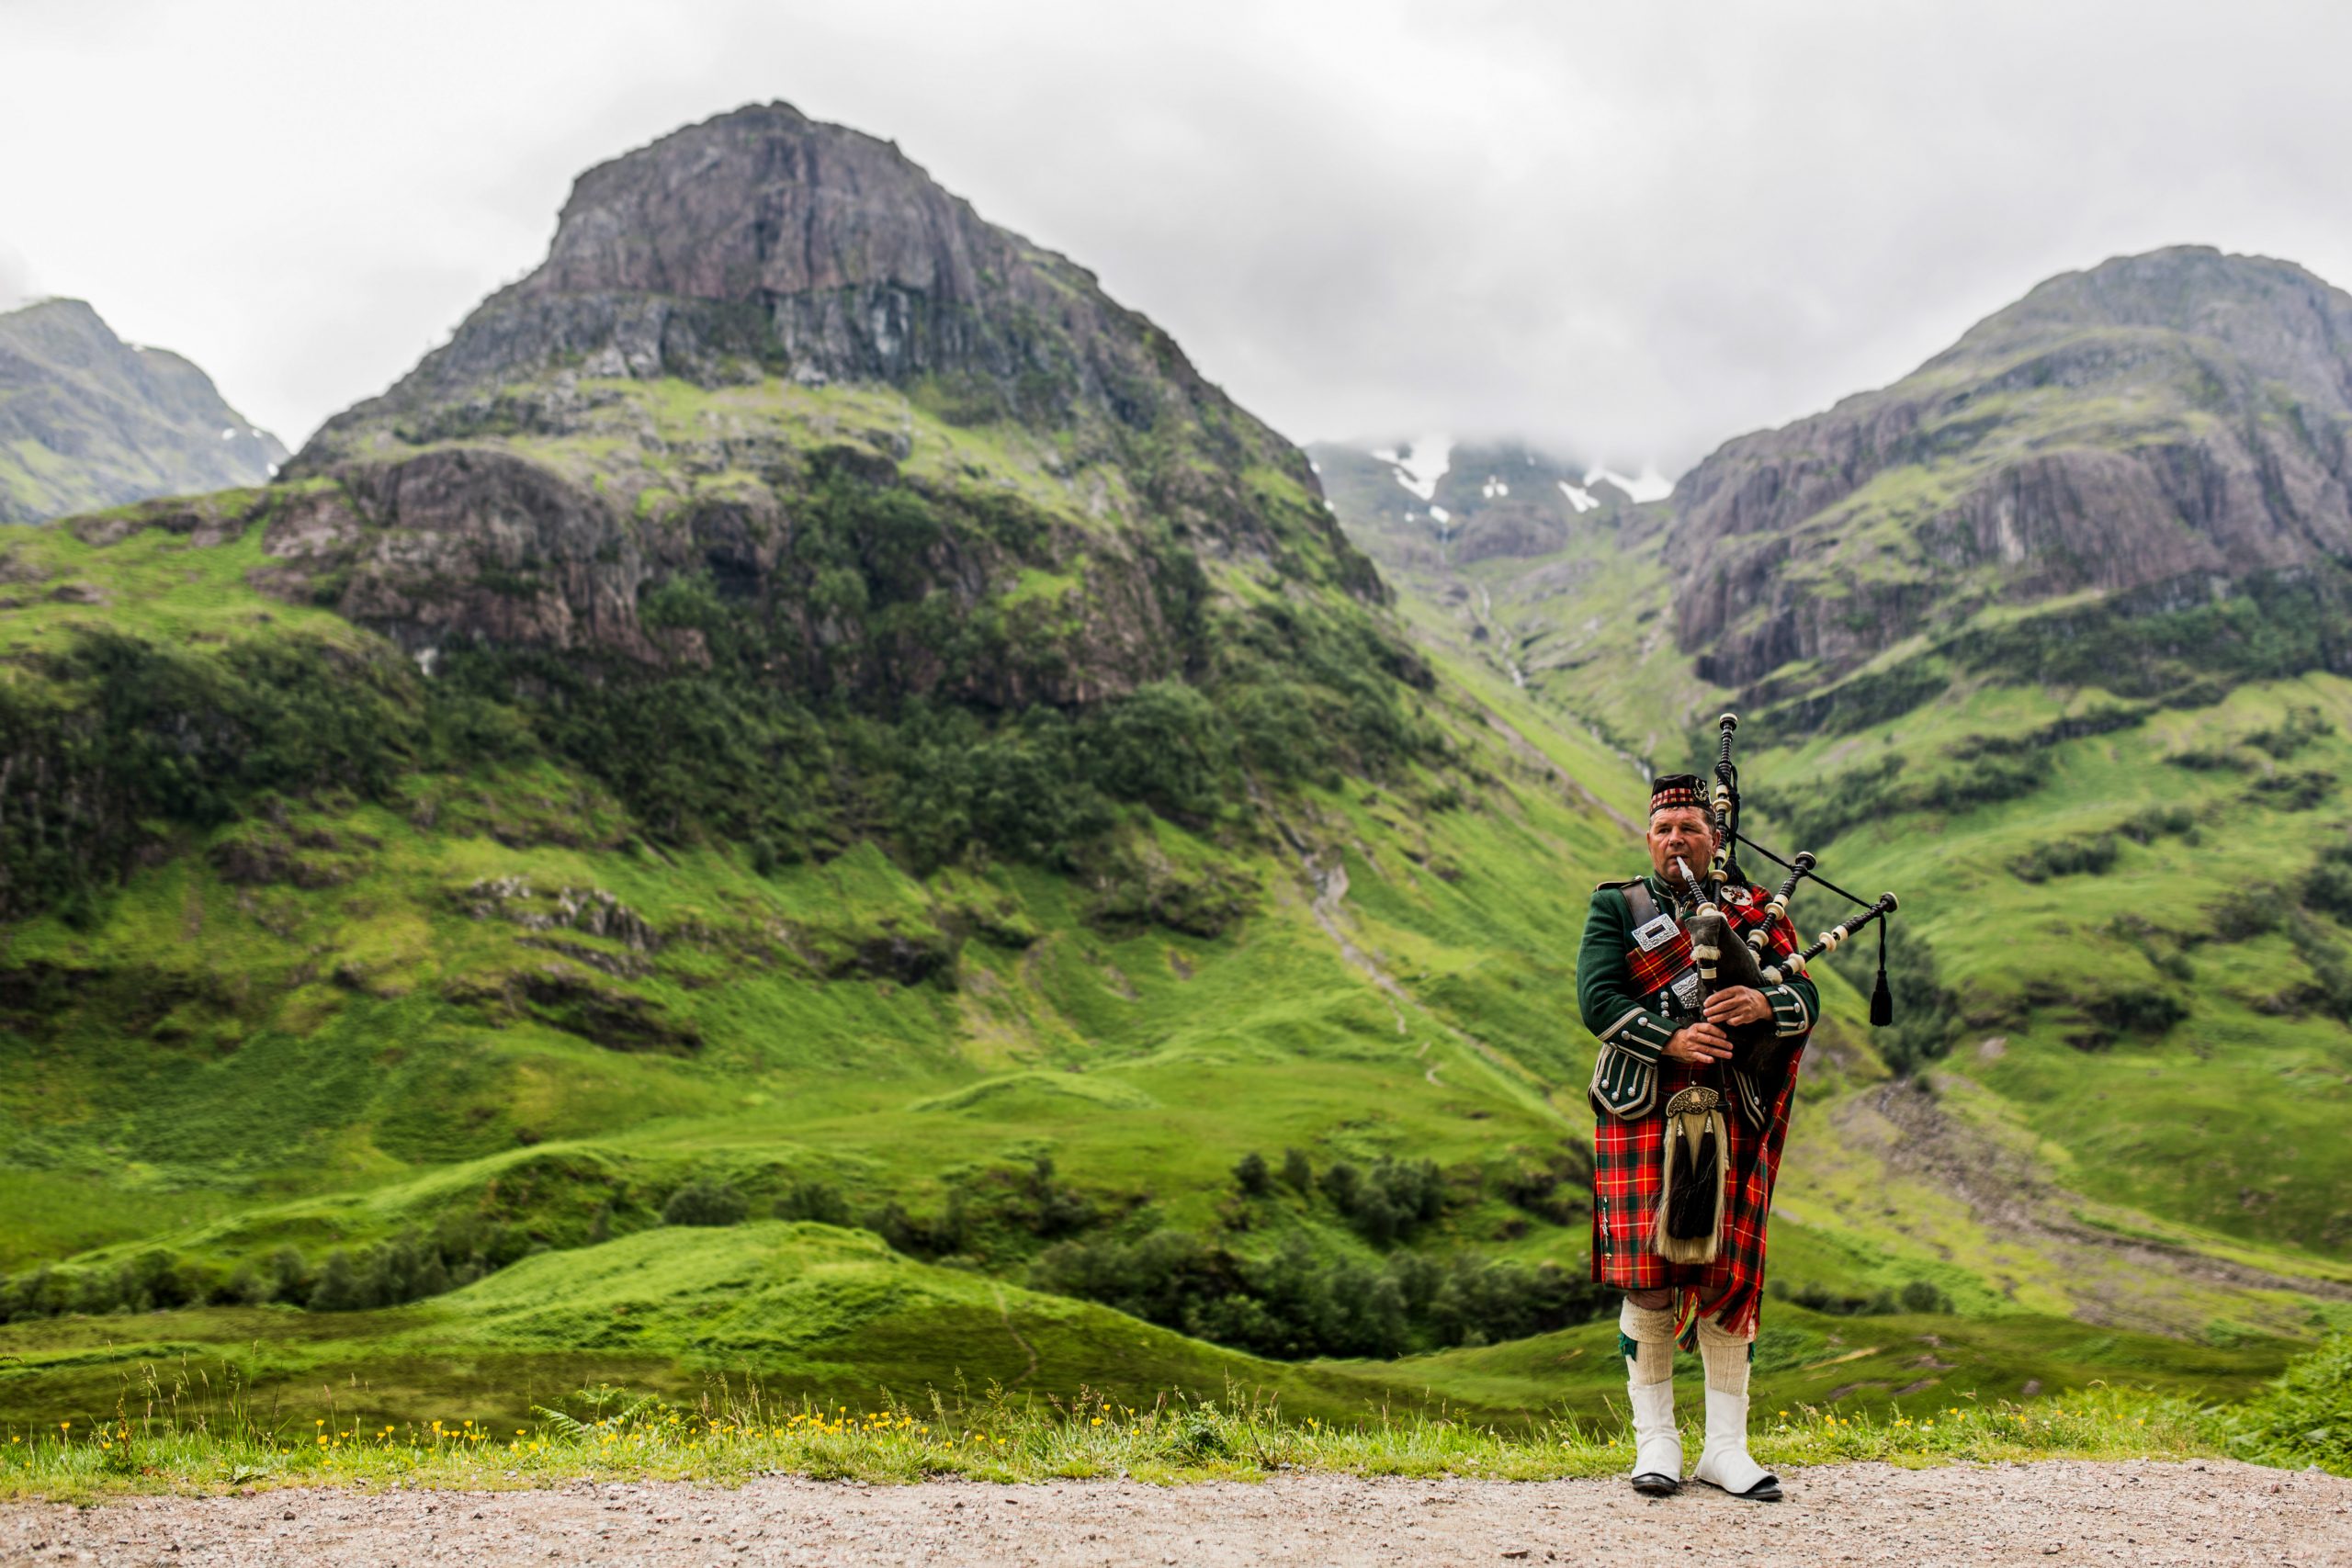 Scottish bagpiper at Glencoe, Scotland